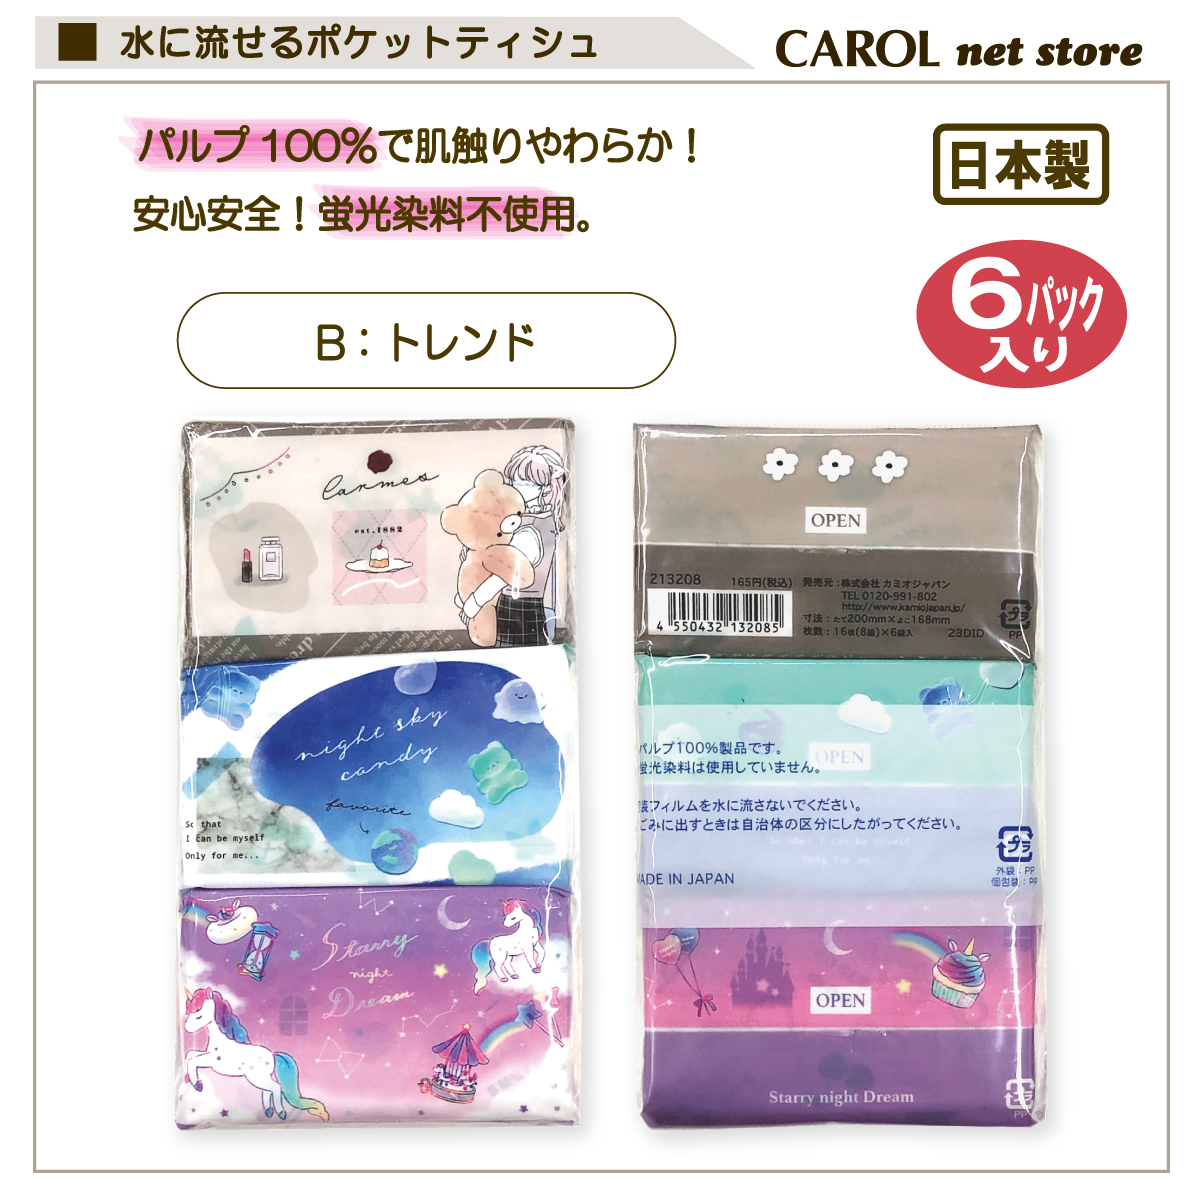  карман tishu6 шт упаковка животное Mini размер вода ....tishu soft ...... Pal p100% сделано в Японии входить . входить . новый . период почтовая доставка 